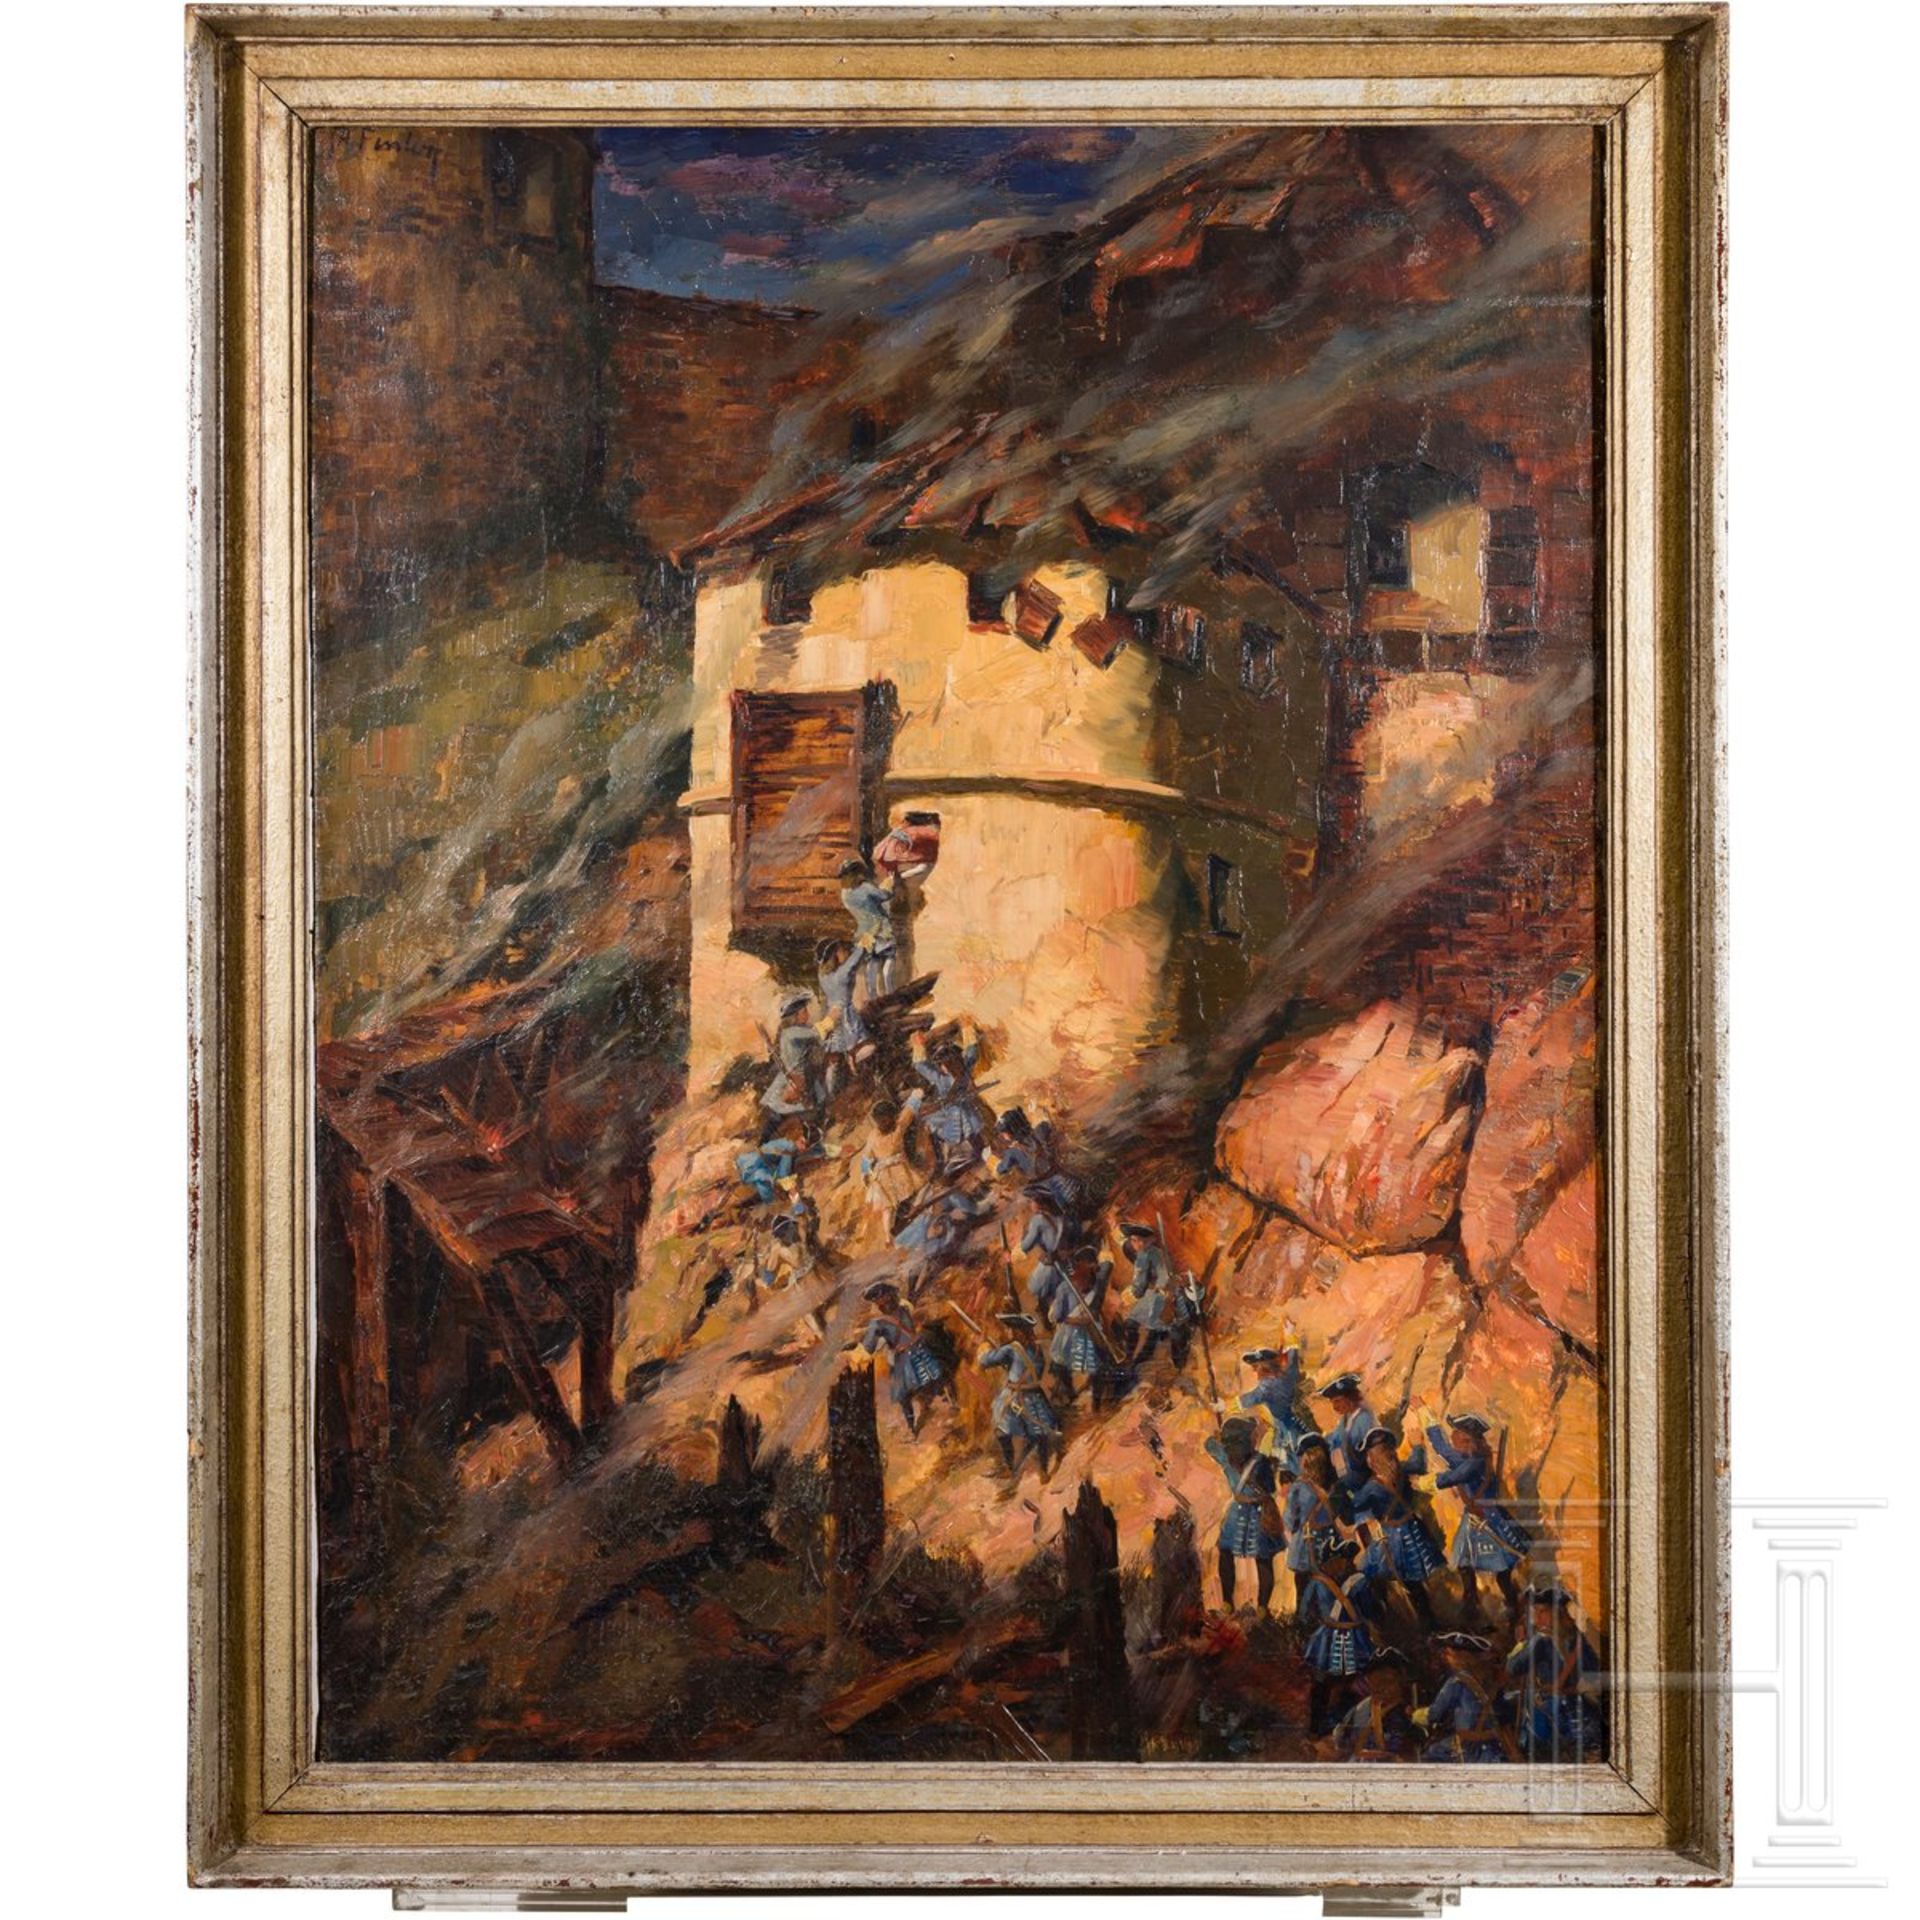 Kurbayerische Infanterie beim Sturm auf eine Burg, Gemälde um 1900